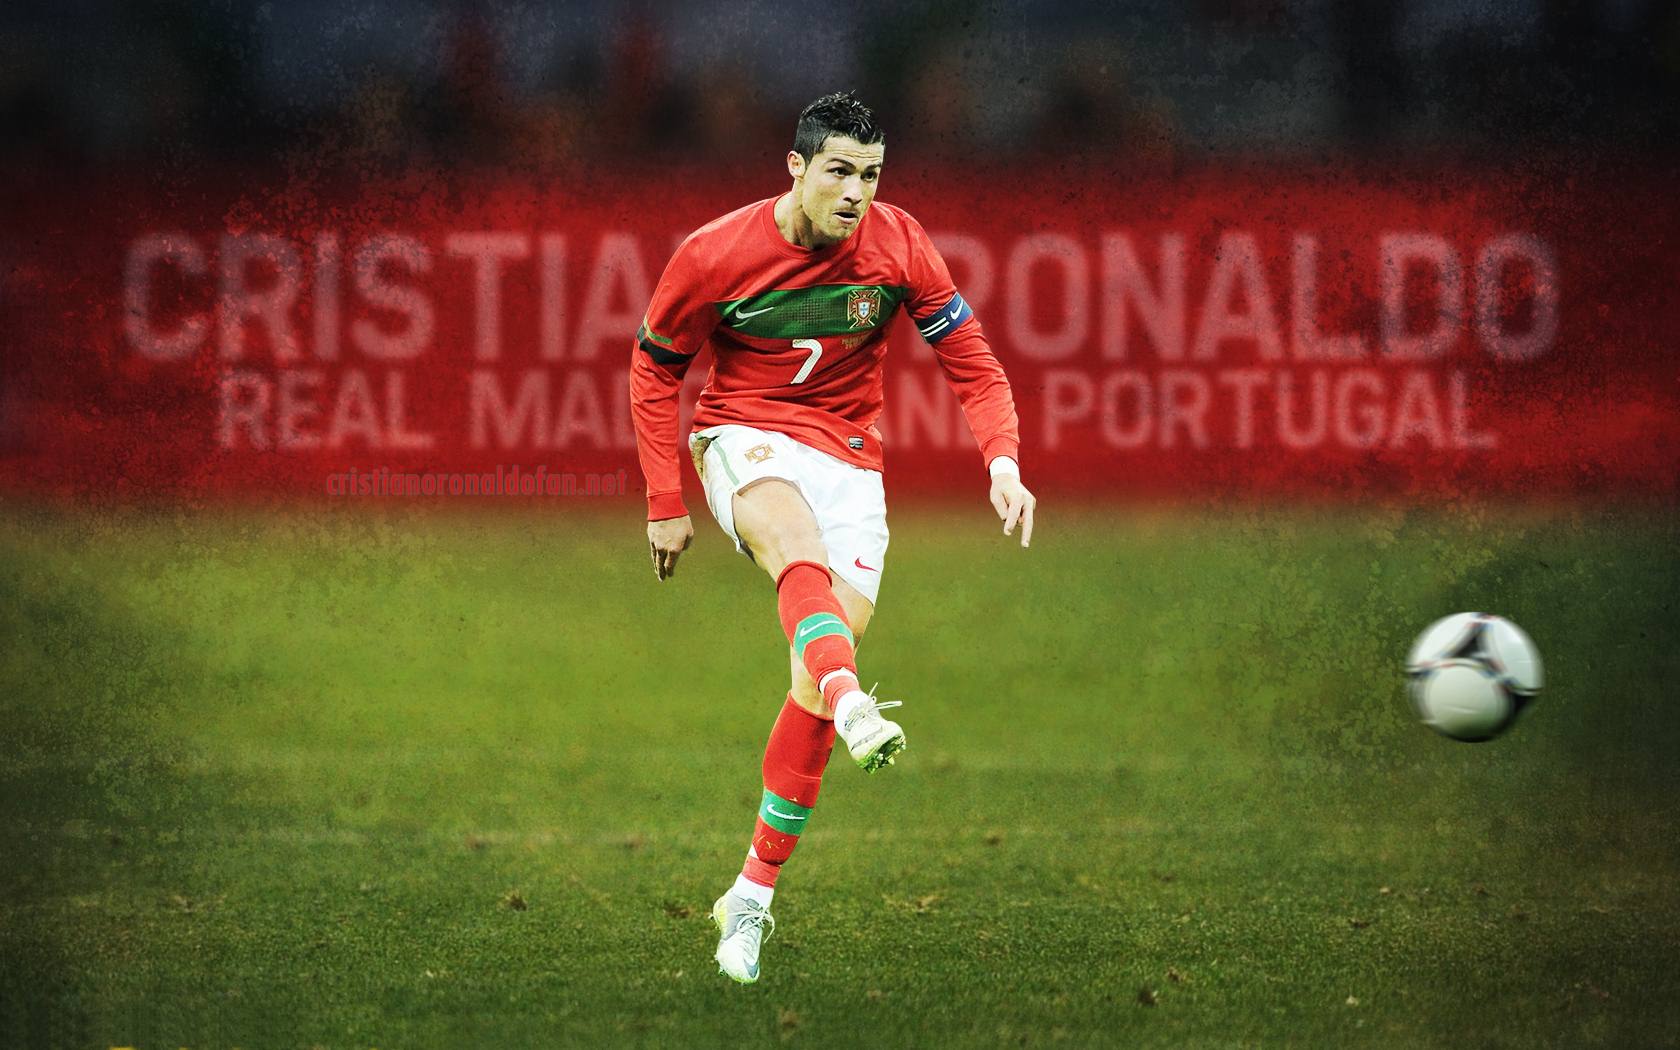 Cristiano Ronaldo HD Wallpaper Portugal. Free High Definition